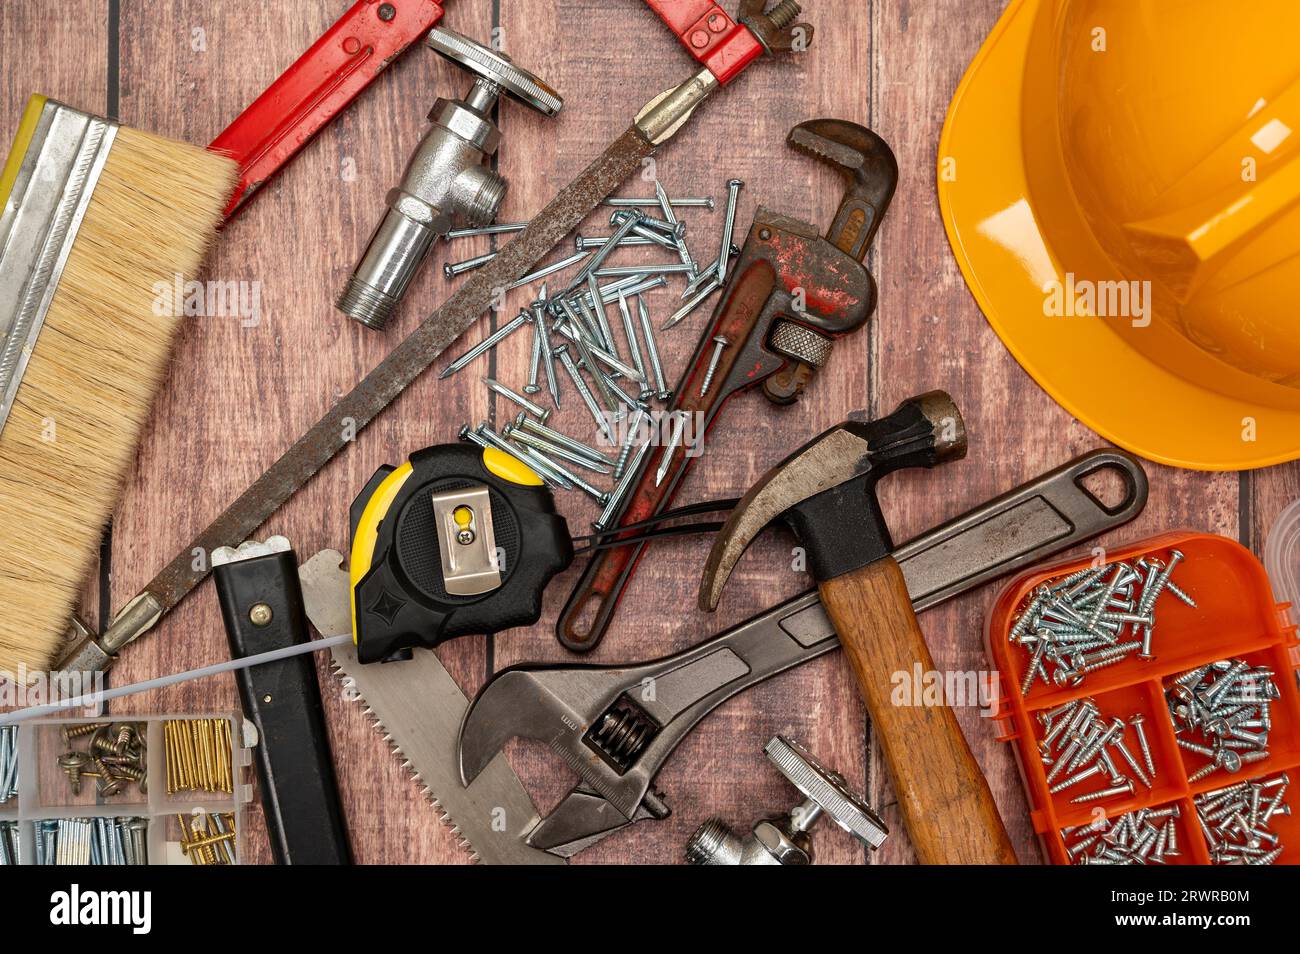 Auf einem Holzbrett werden eine Vielzahl von Werkzeugen, die für die Reparatur zu Hause benötigt werden, unregelmäßig platziert. Stockfoto